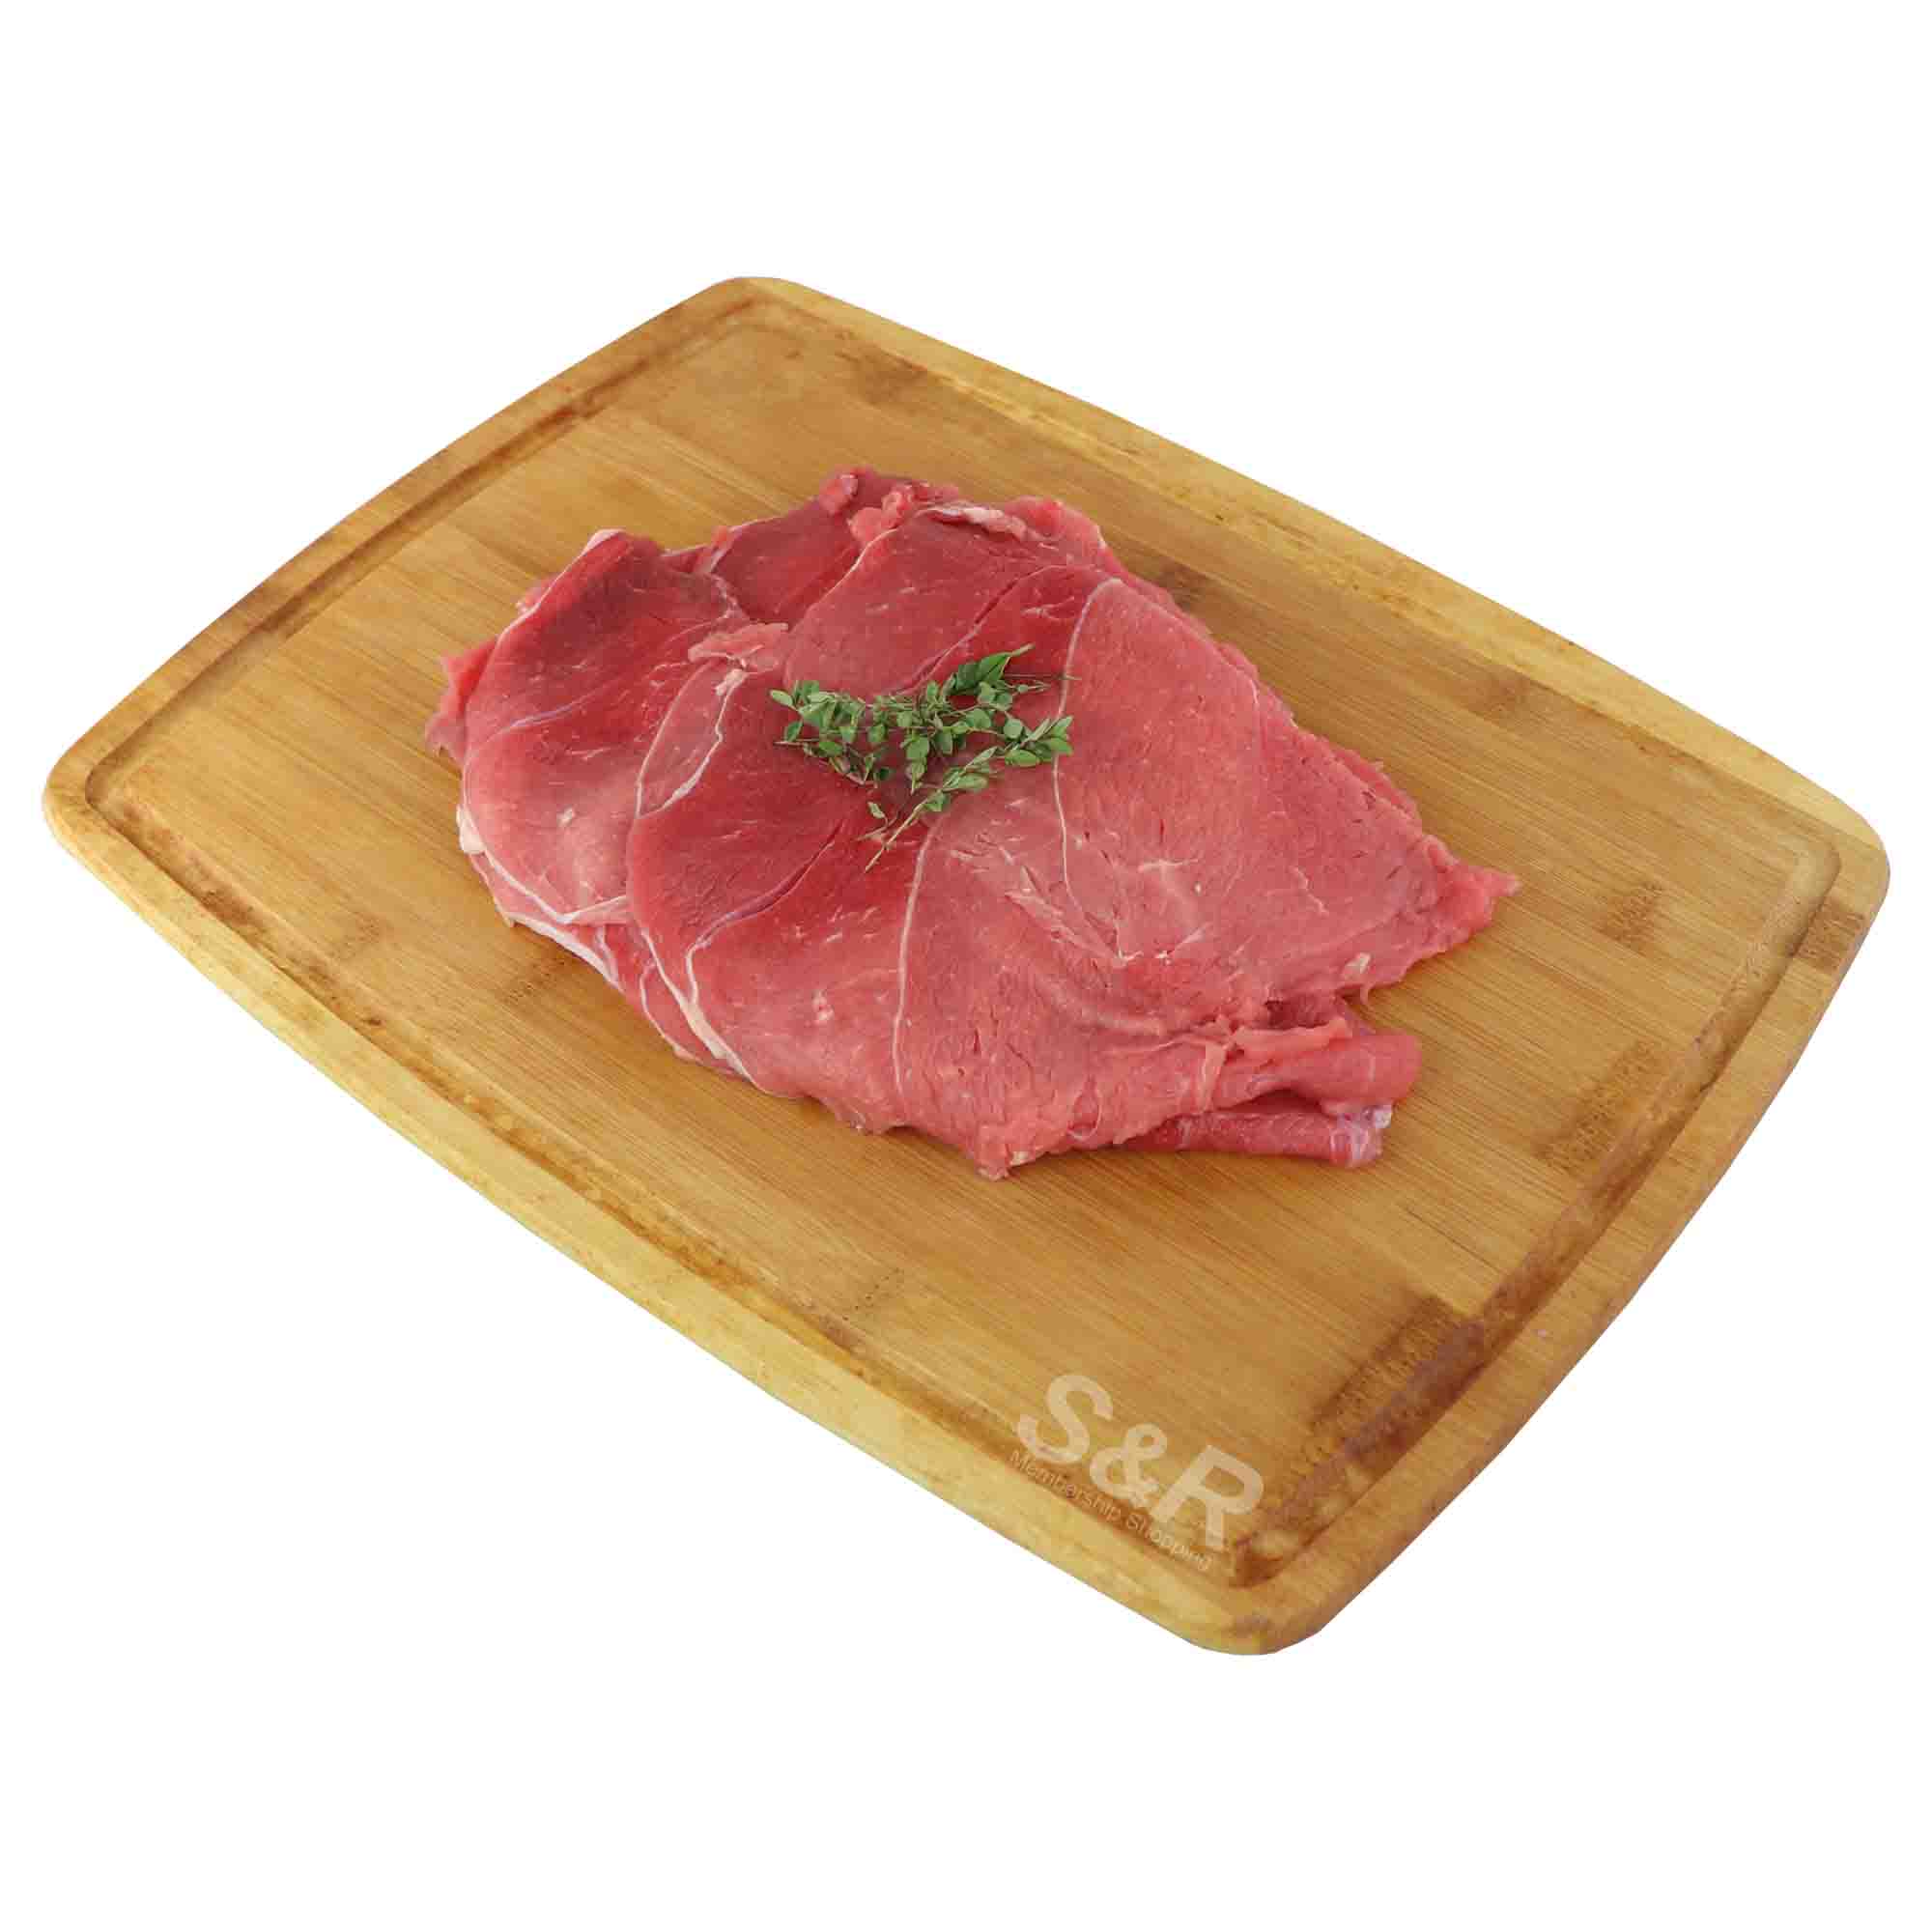 Members' Value Beef Sukiyaki approx. 2kg